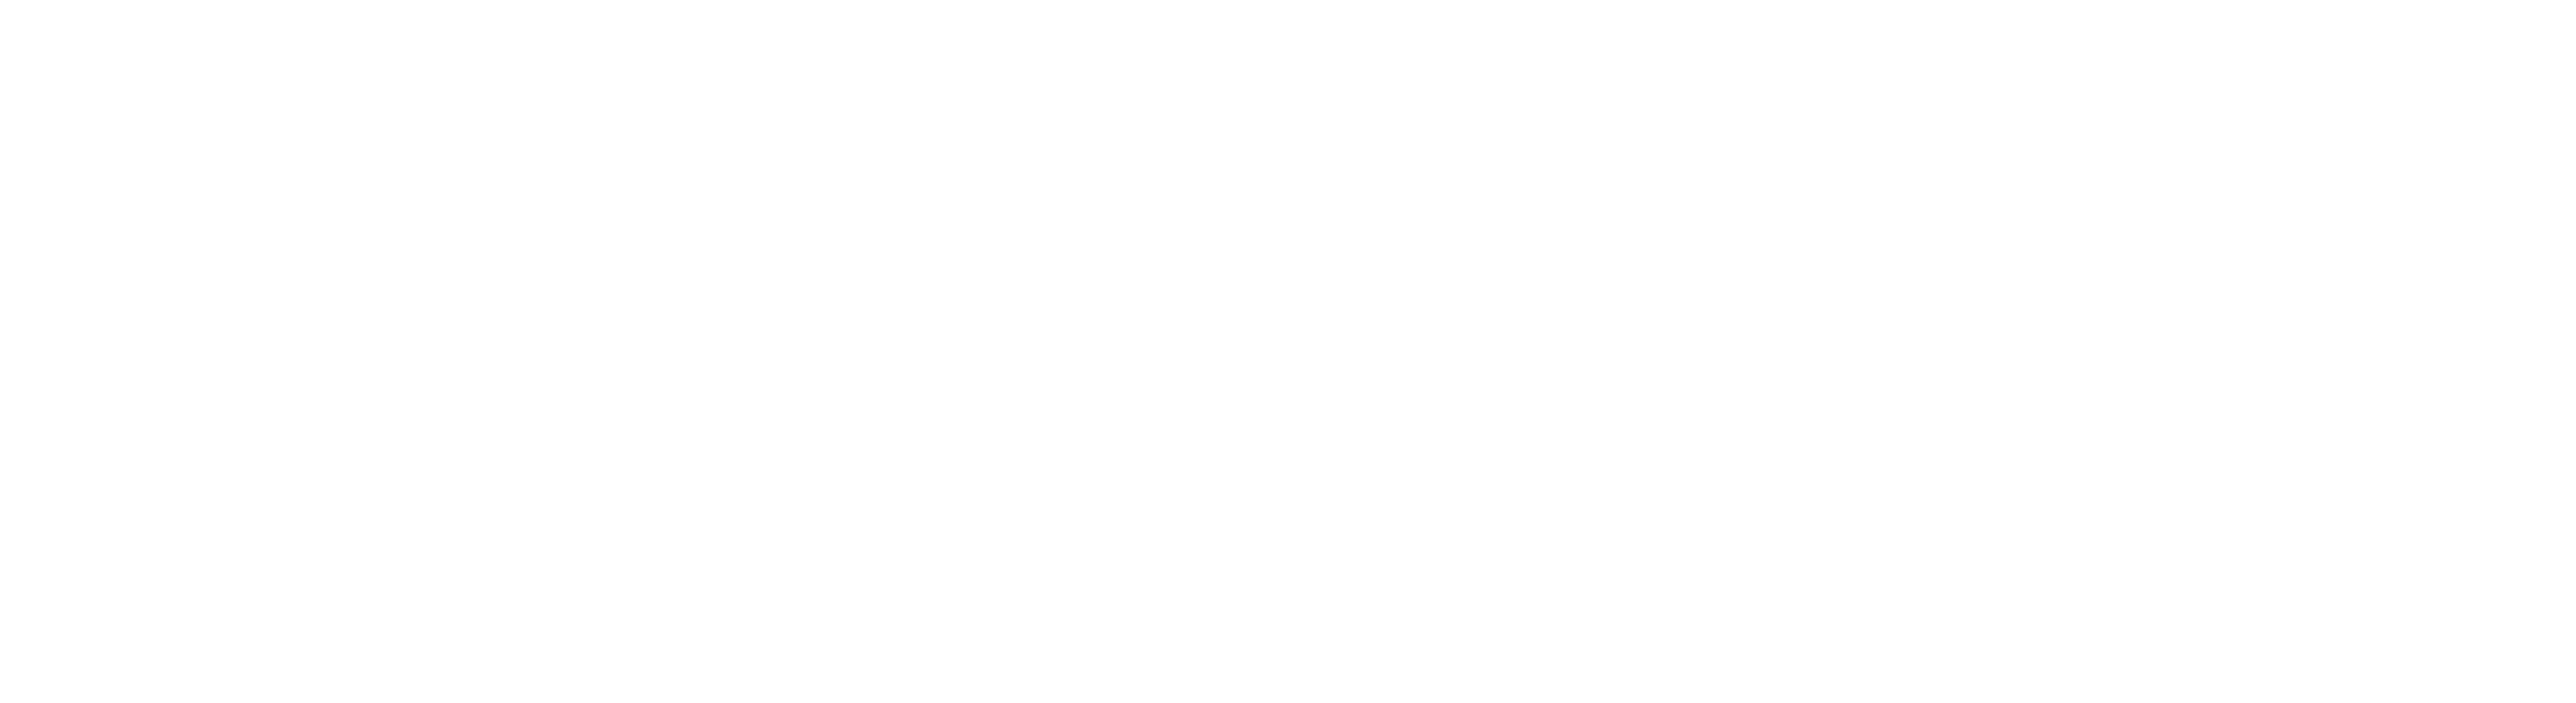 Nova Scotia Paramedics IUOE Local 727